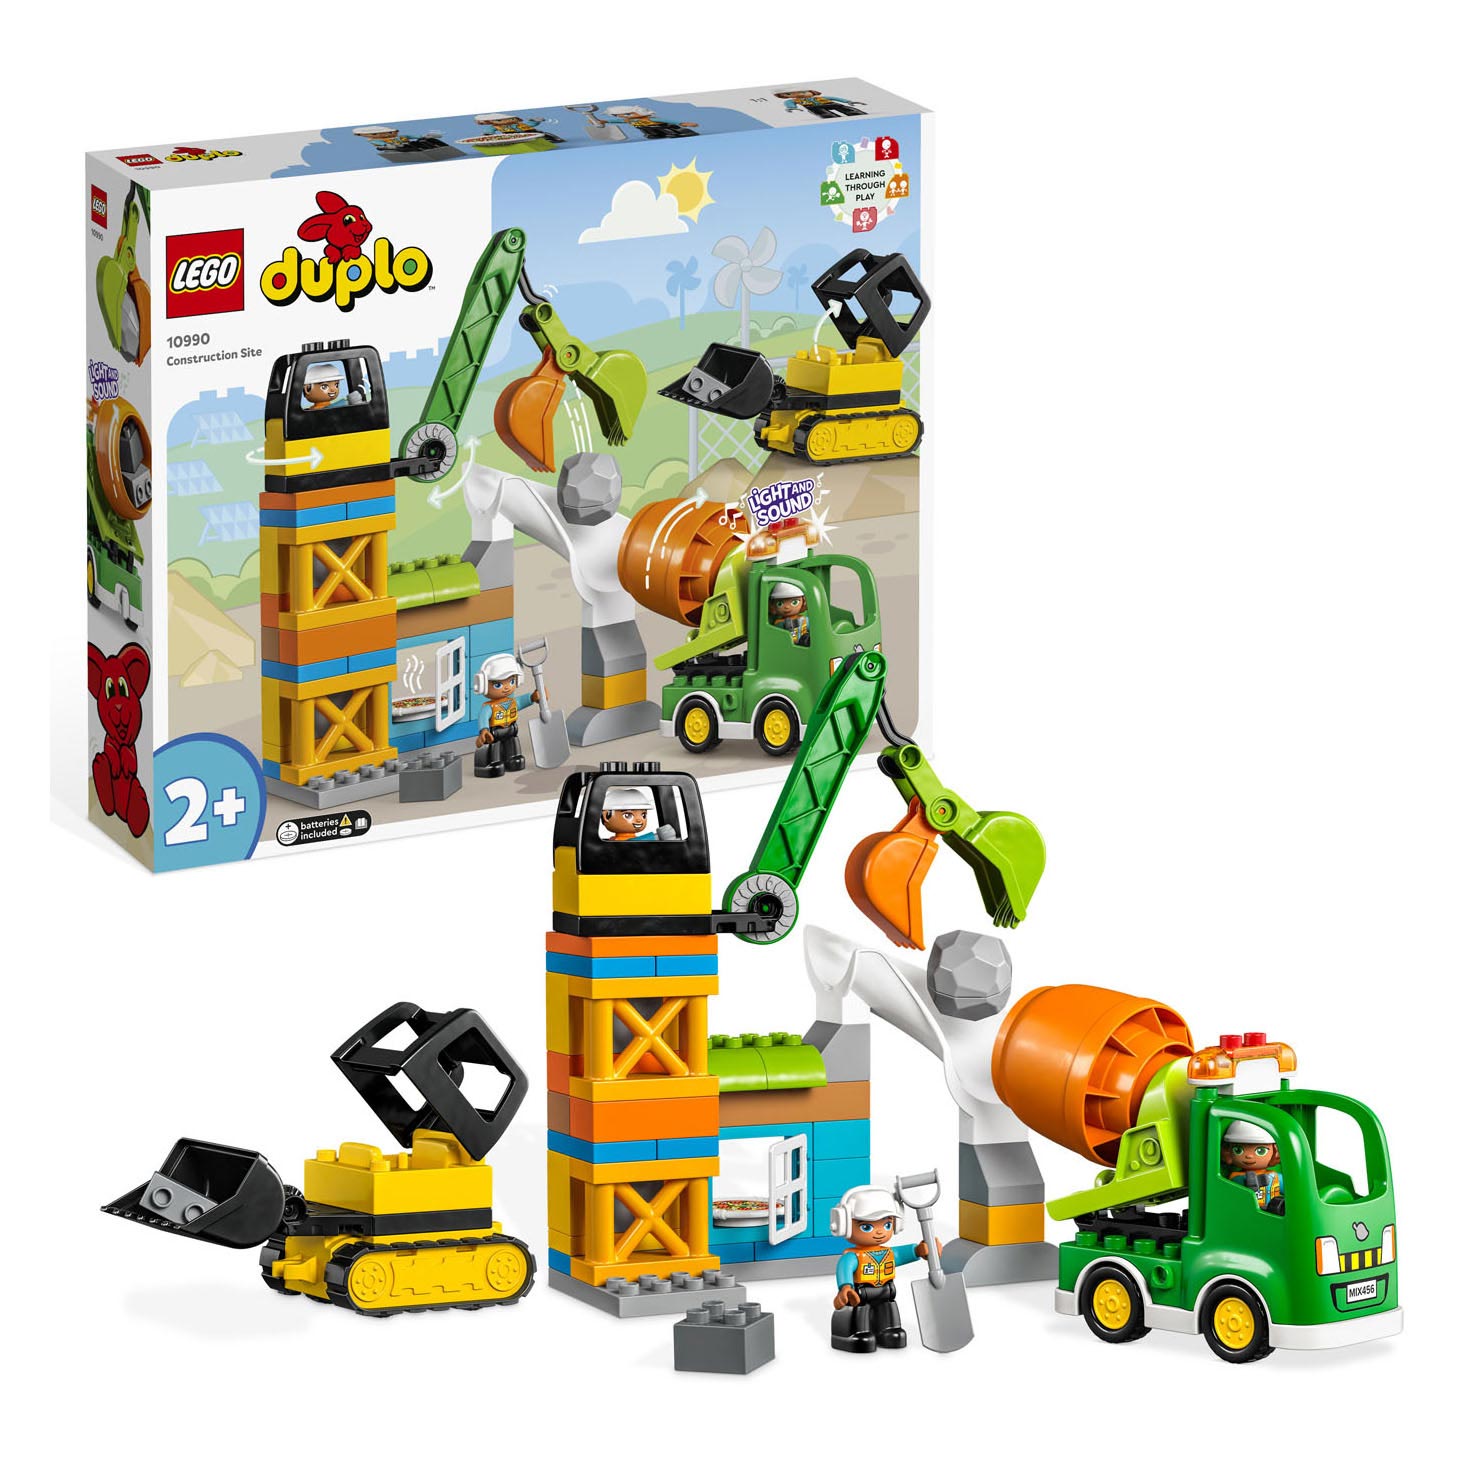 Zuivelproducten Anesthesie beroemd LEGO DUPLO 10990 Bouwplaats online kopen | Lobbes Speelgoed België